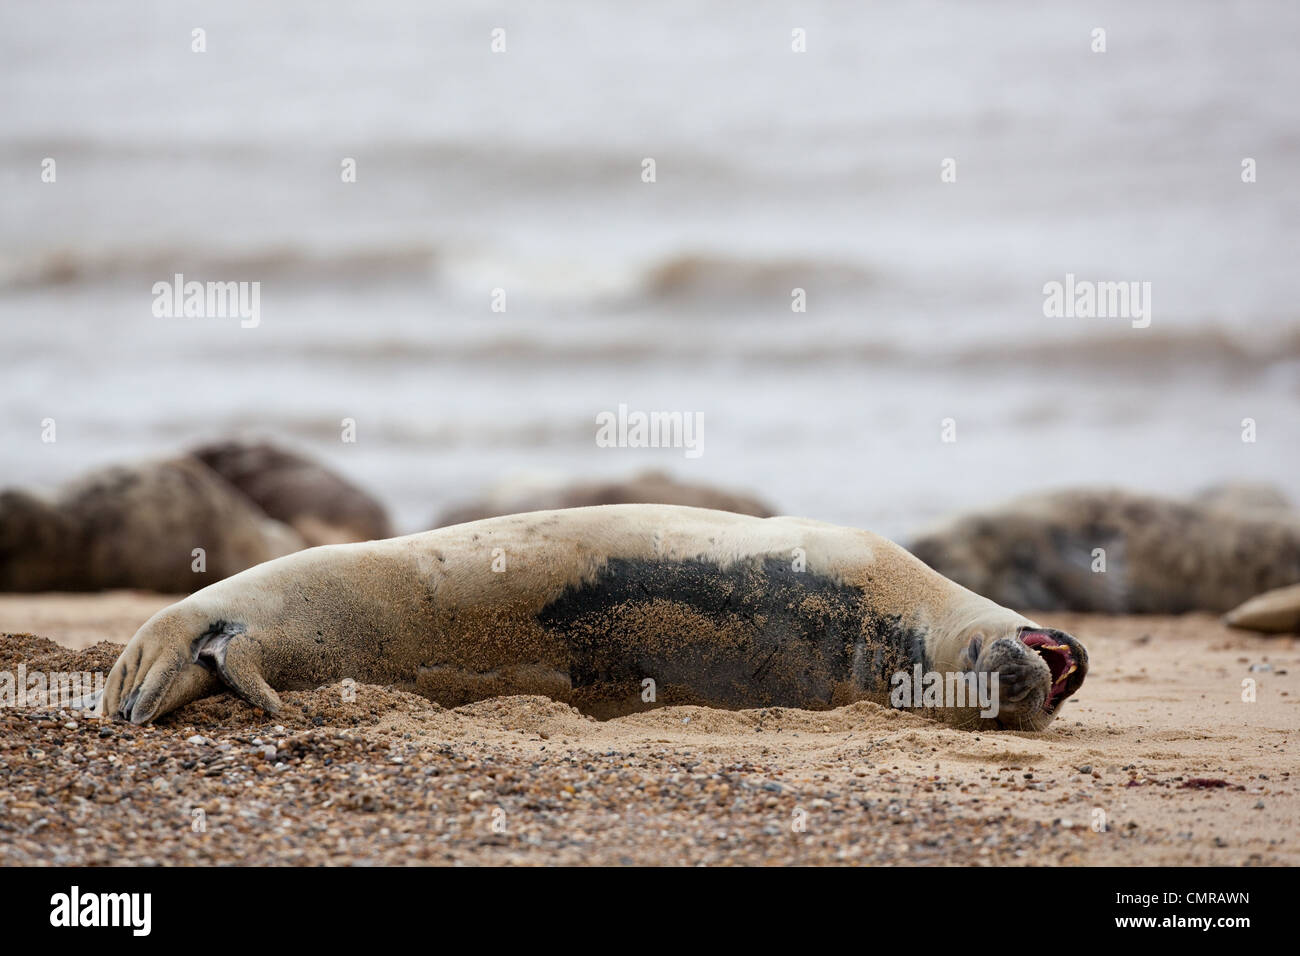 Atlantik oder Grey Seal (Halichoerus Grypus). Kuh oder weiblich. Entspannt, Ruhe am Strand. Mund offen zeigt Zähne. Stockfoto